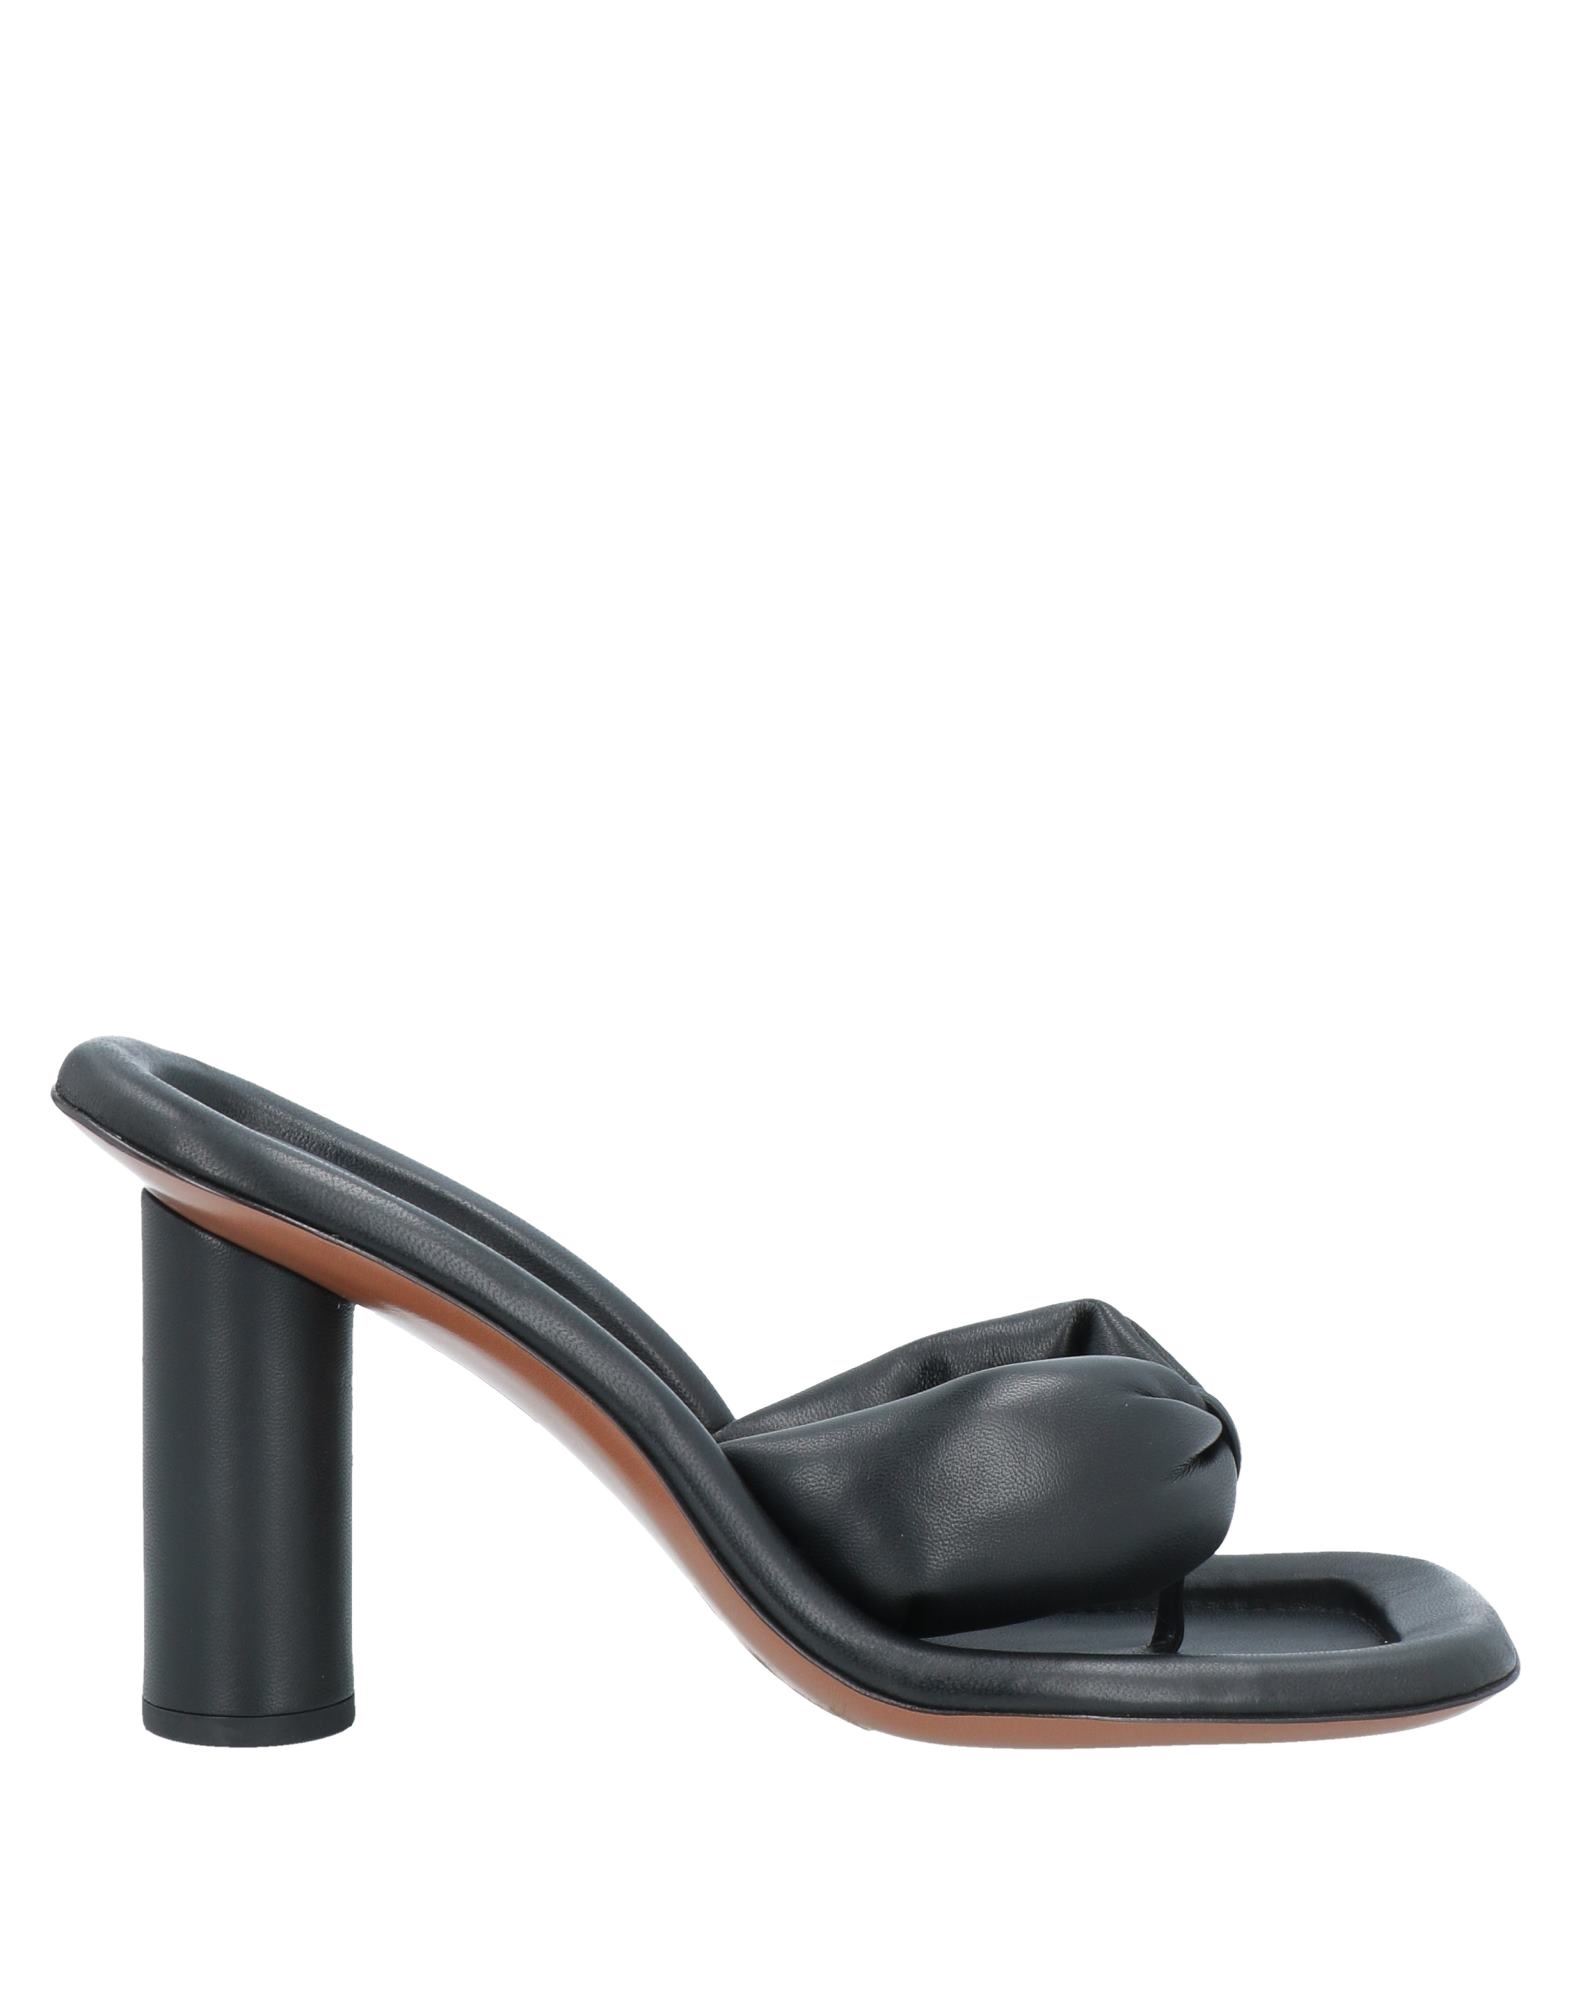 Shop Ambush Woman Thong Sandal Black Size 8 Soft Leather